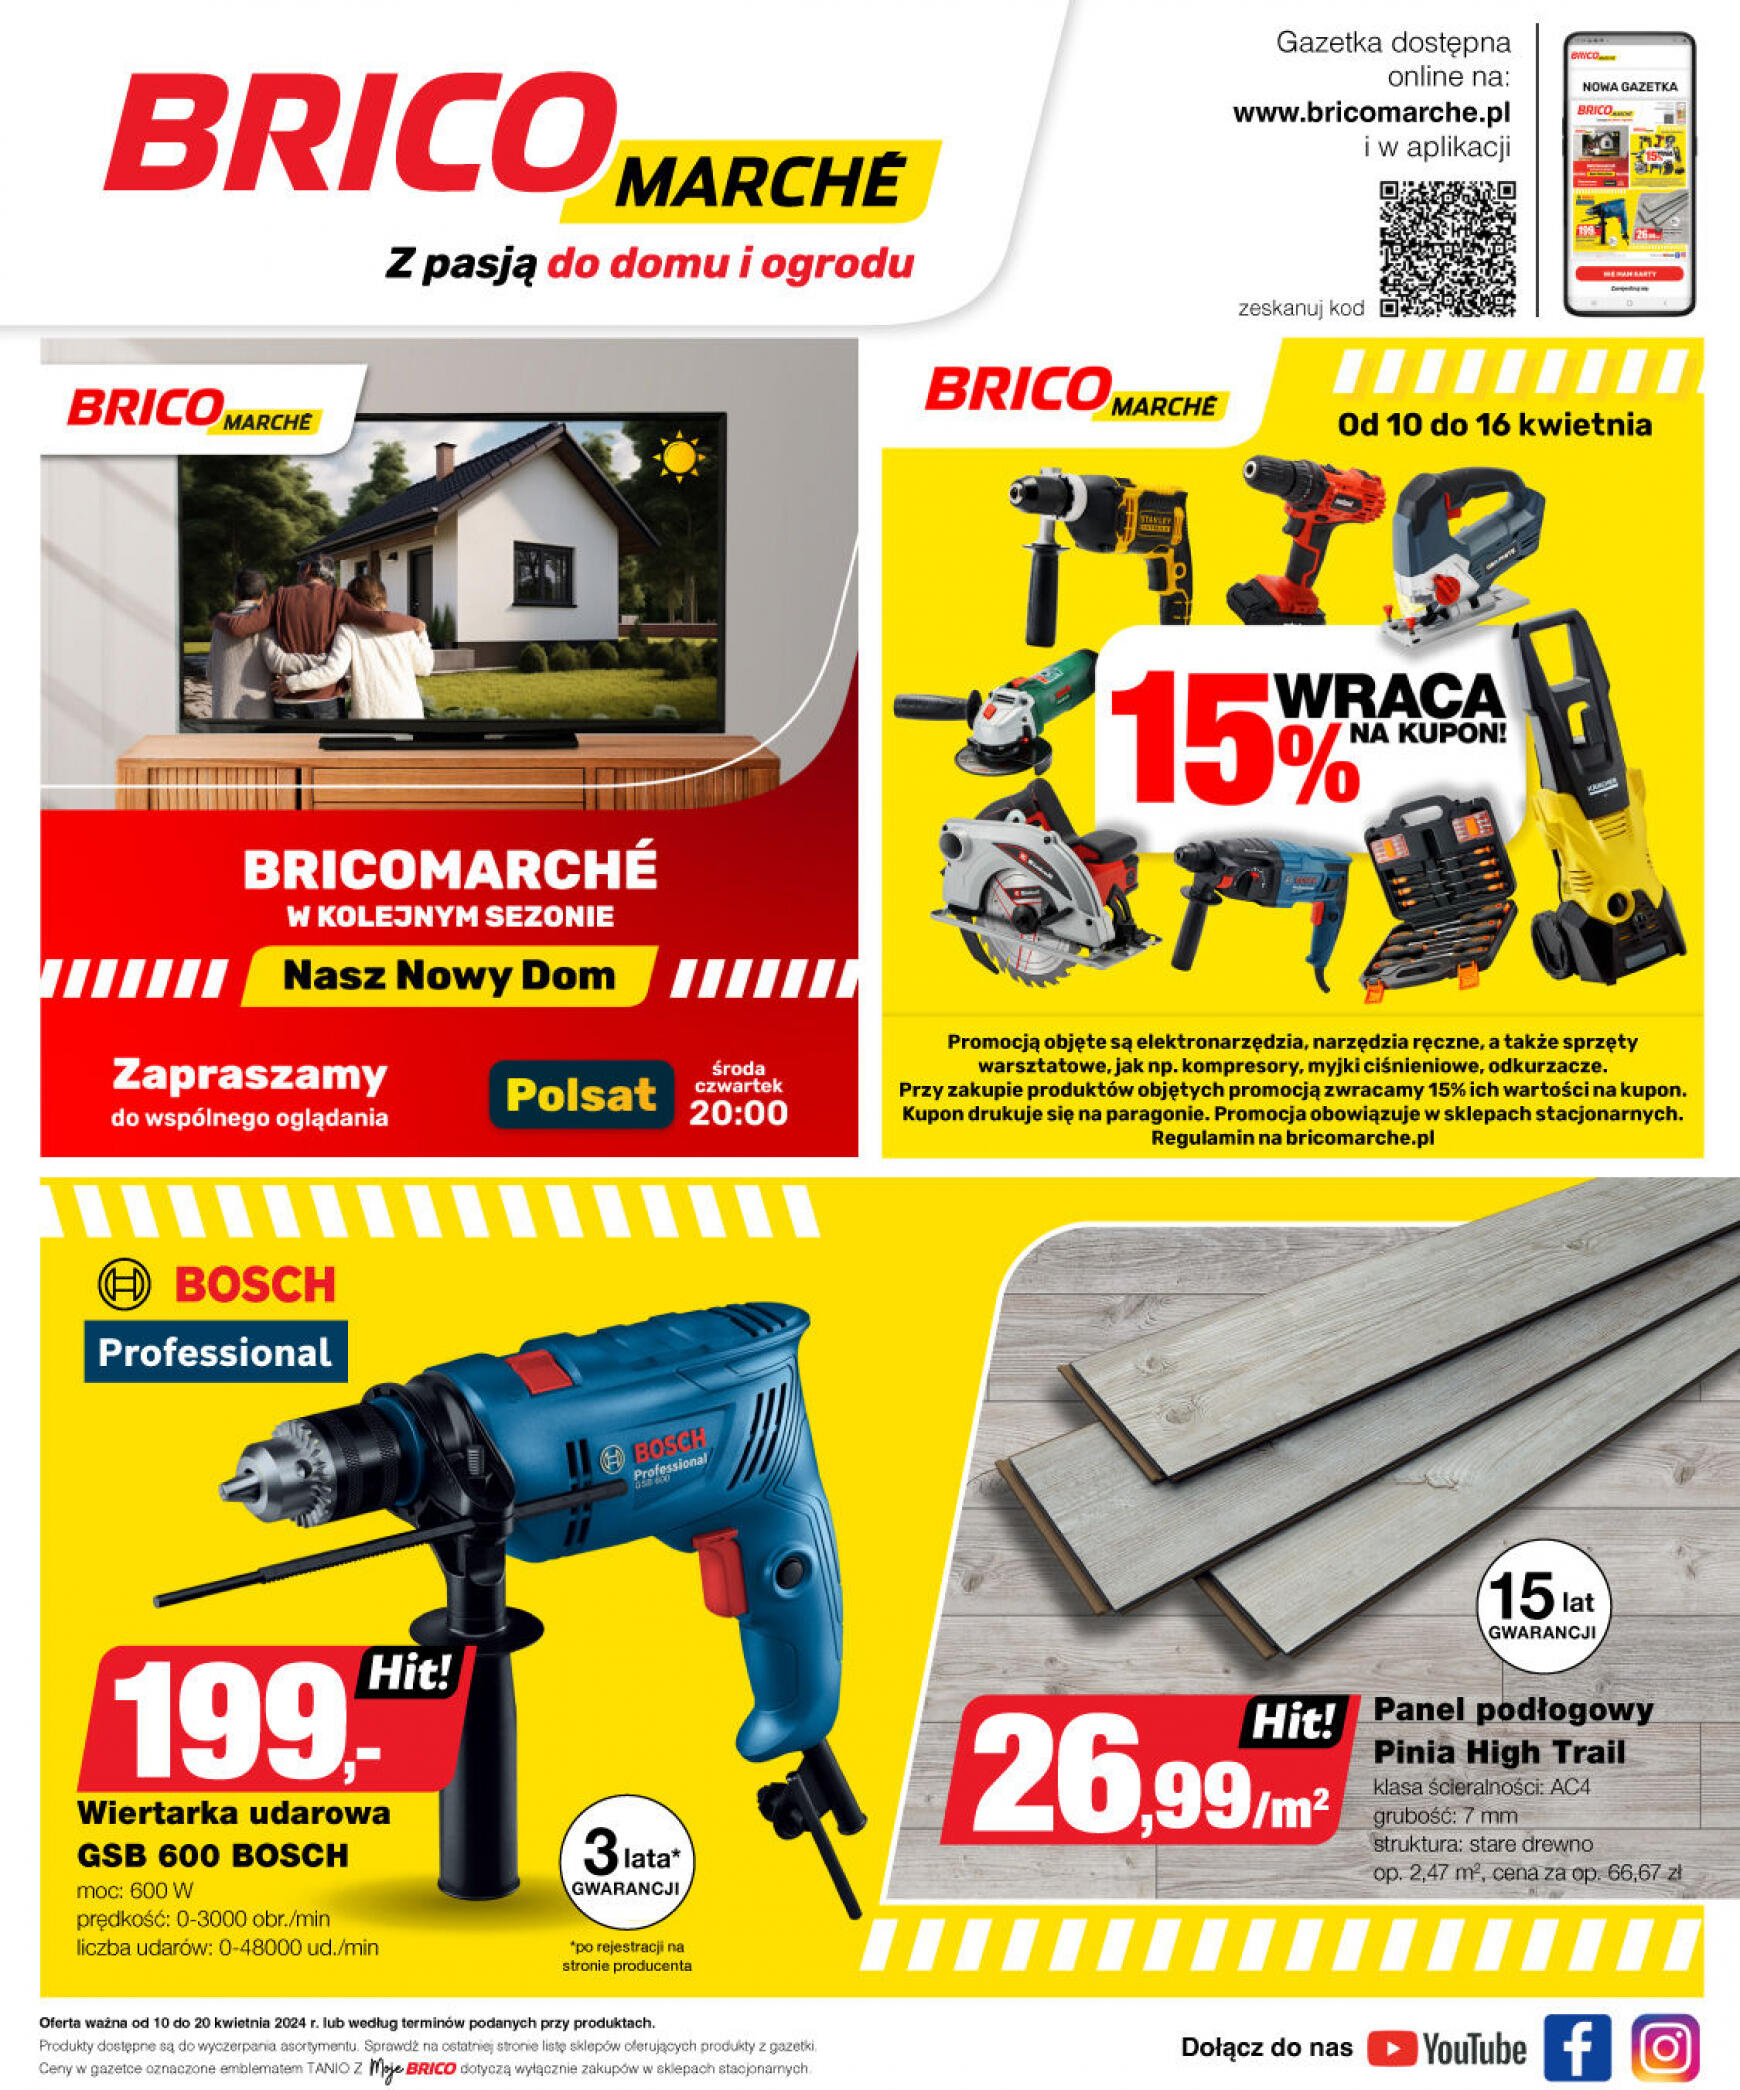 brico-marche - Bricomarché gazetka aktualna ważna od 10.04. - 20.04. - page: 11